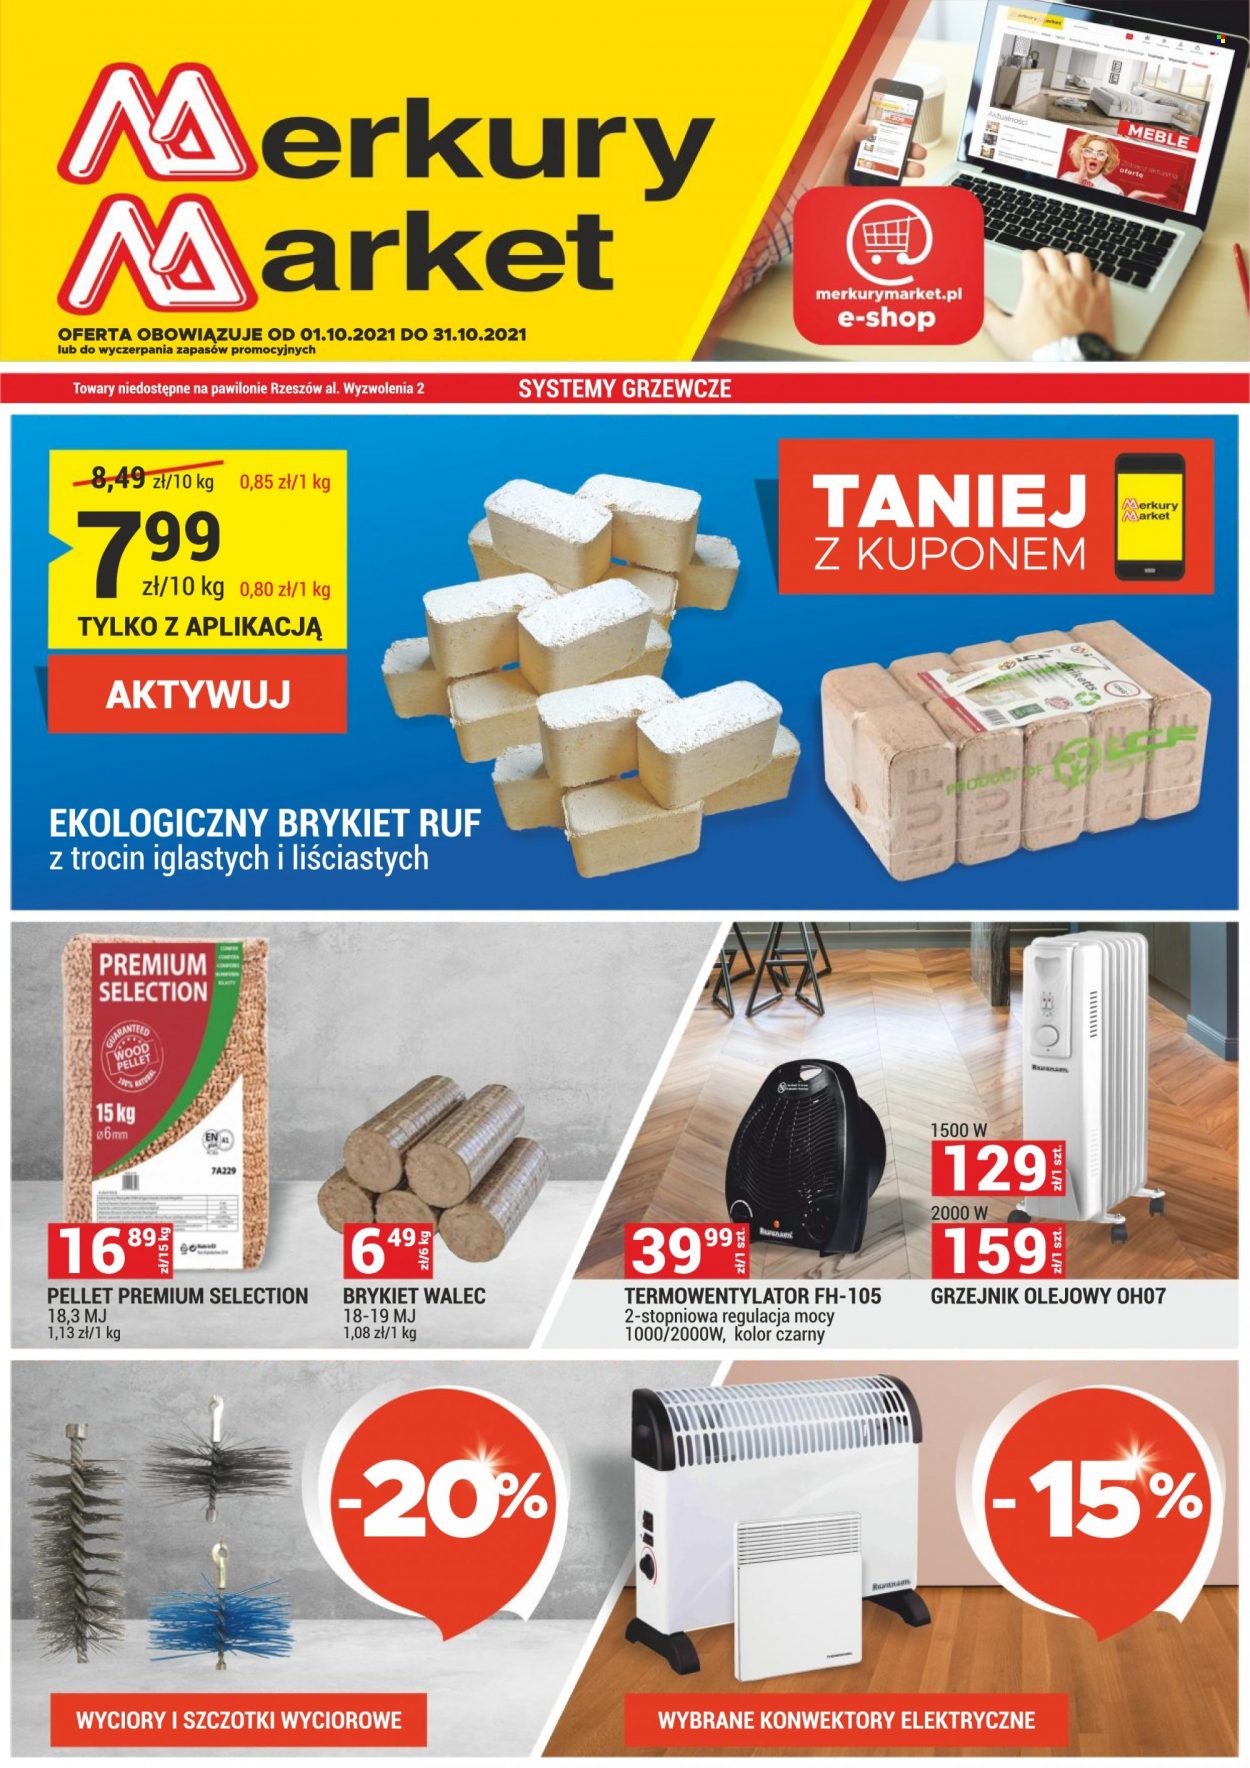 Gazetka Merkury Market - 1.10.2021 - 31.10.2021 - Produkty w akcji - wałek, termowentylator, grzejnik, pellet, brykiety. Strona 1.